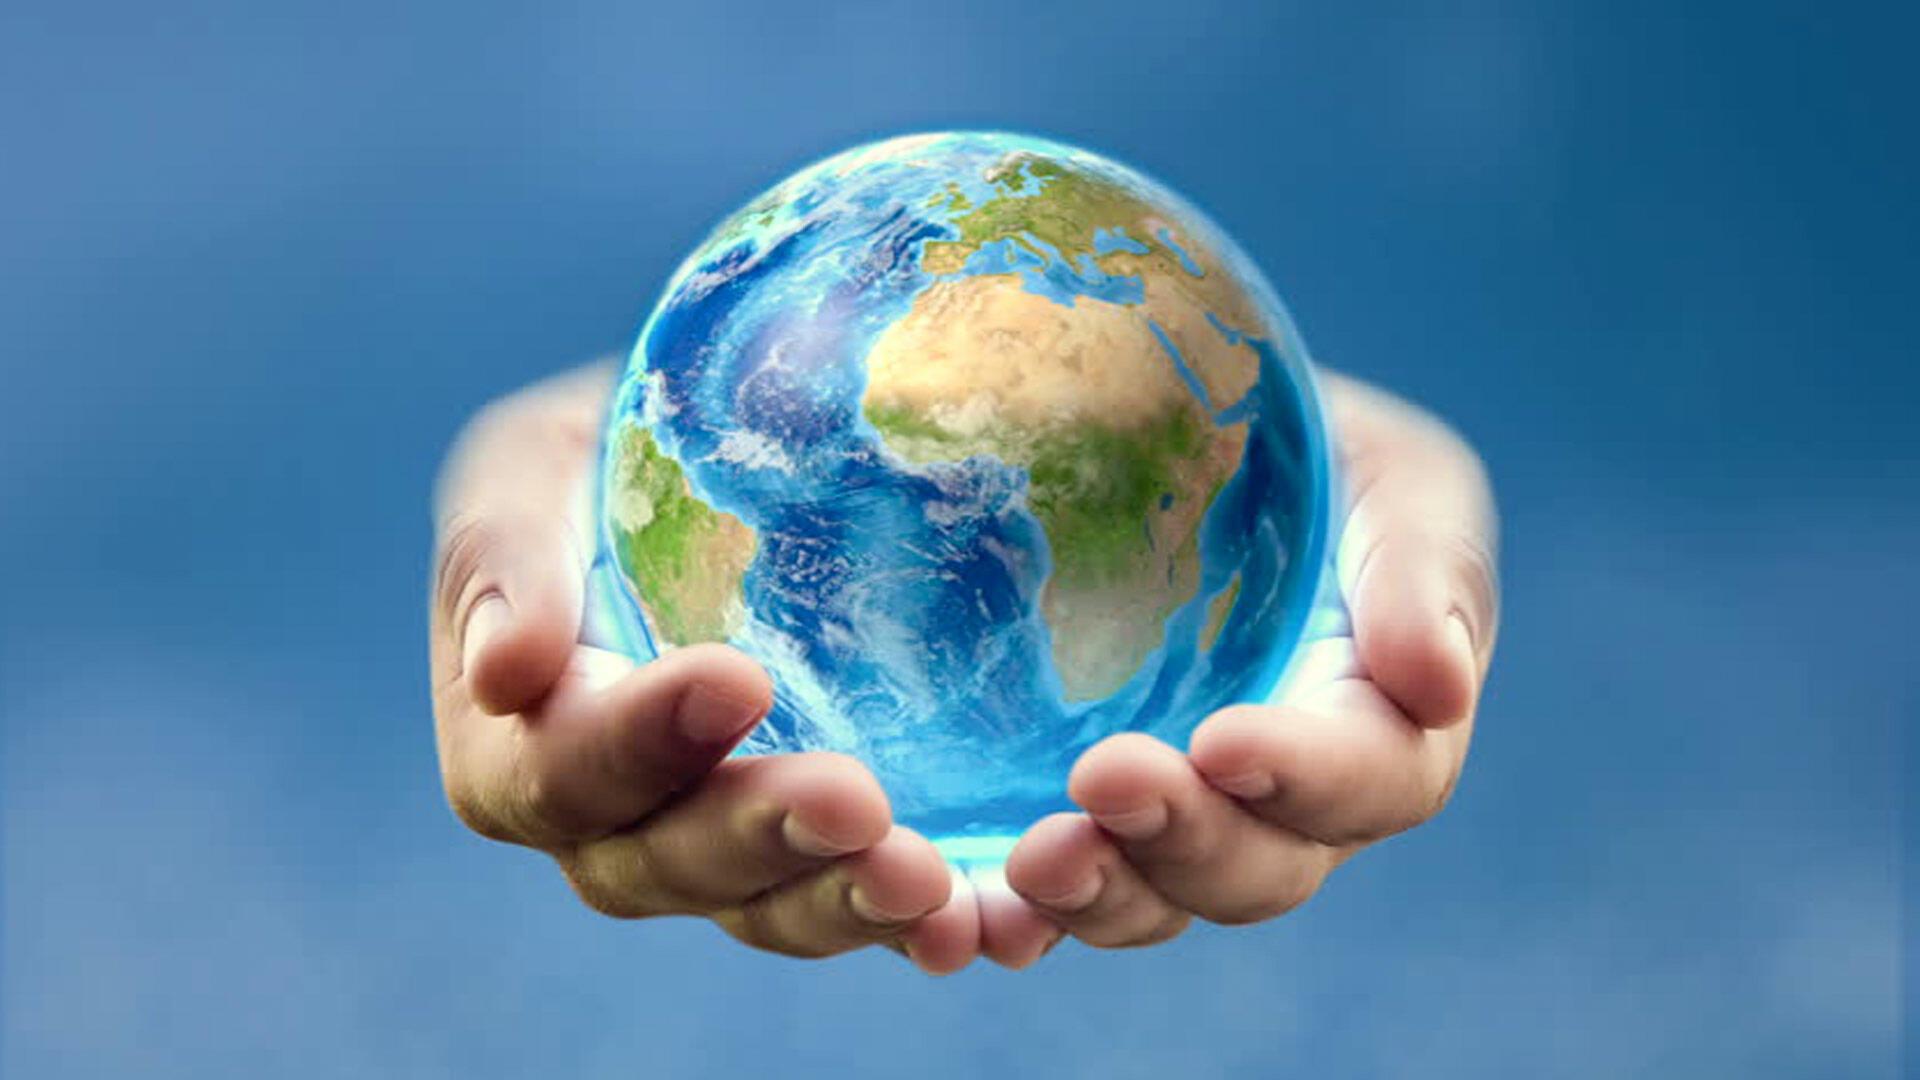 Забота о земле. Земля в руках. Планета в руках. Земной шар в руках человека. Мир в руках человека.